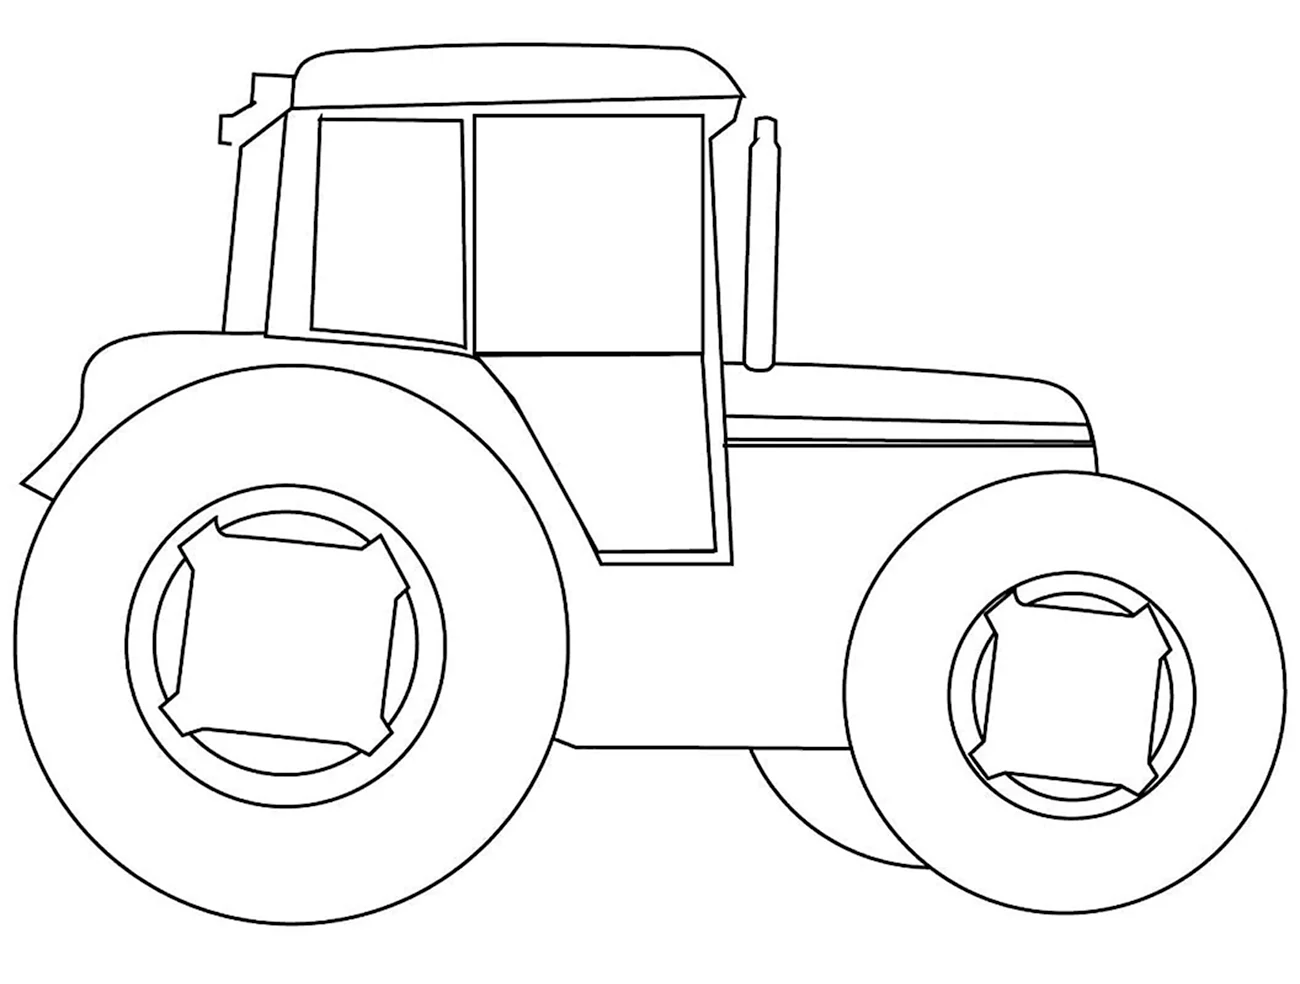 Raskraska для детей Traktor. Для срисовки